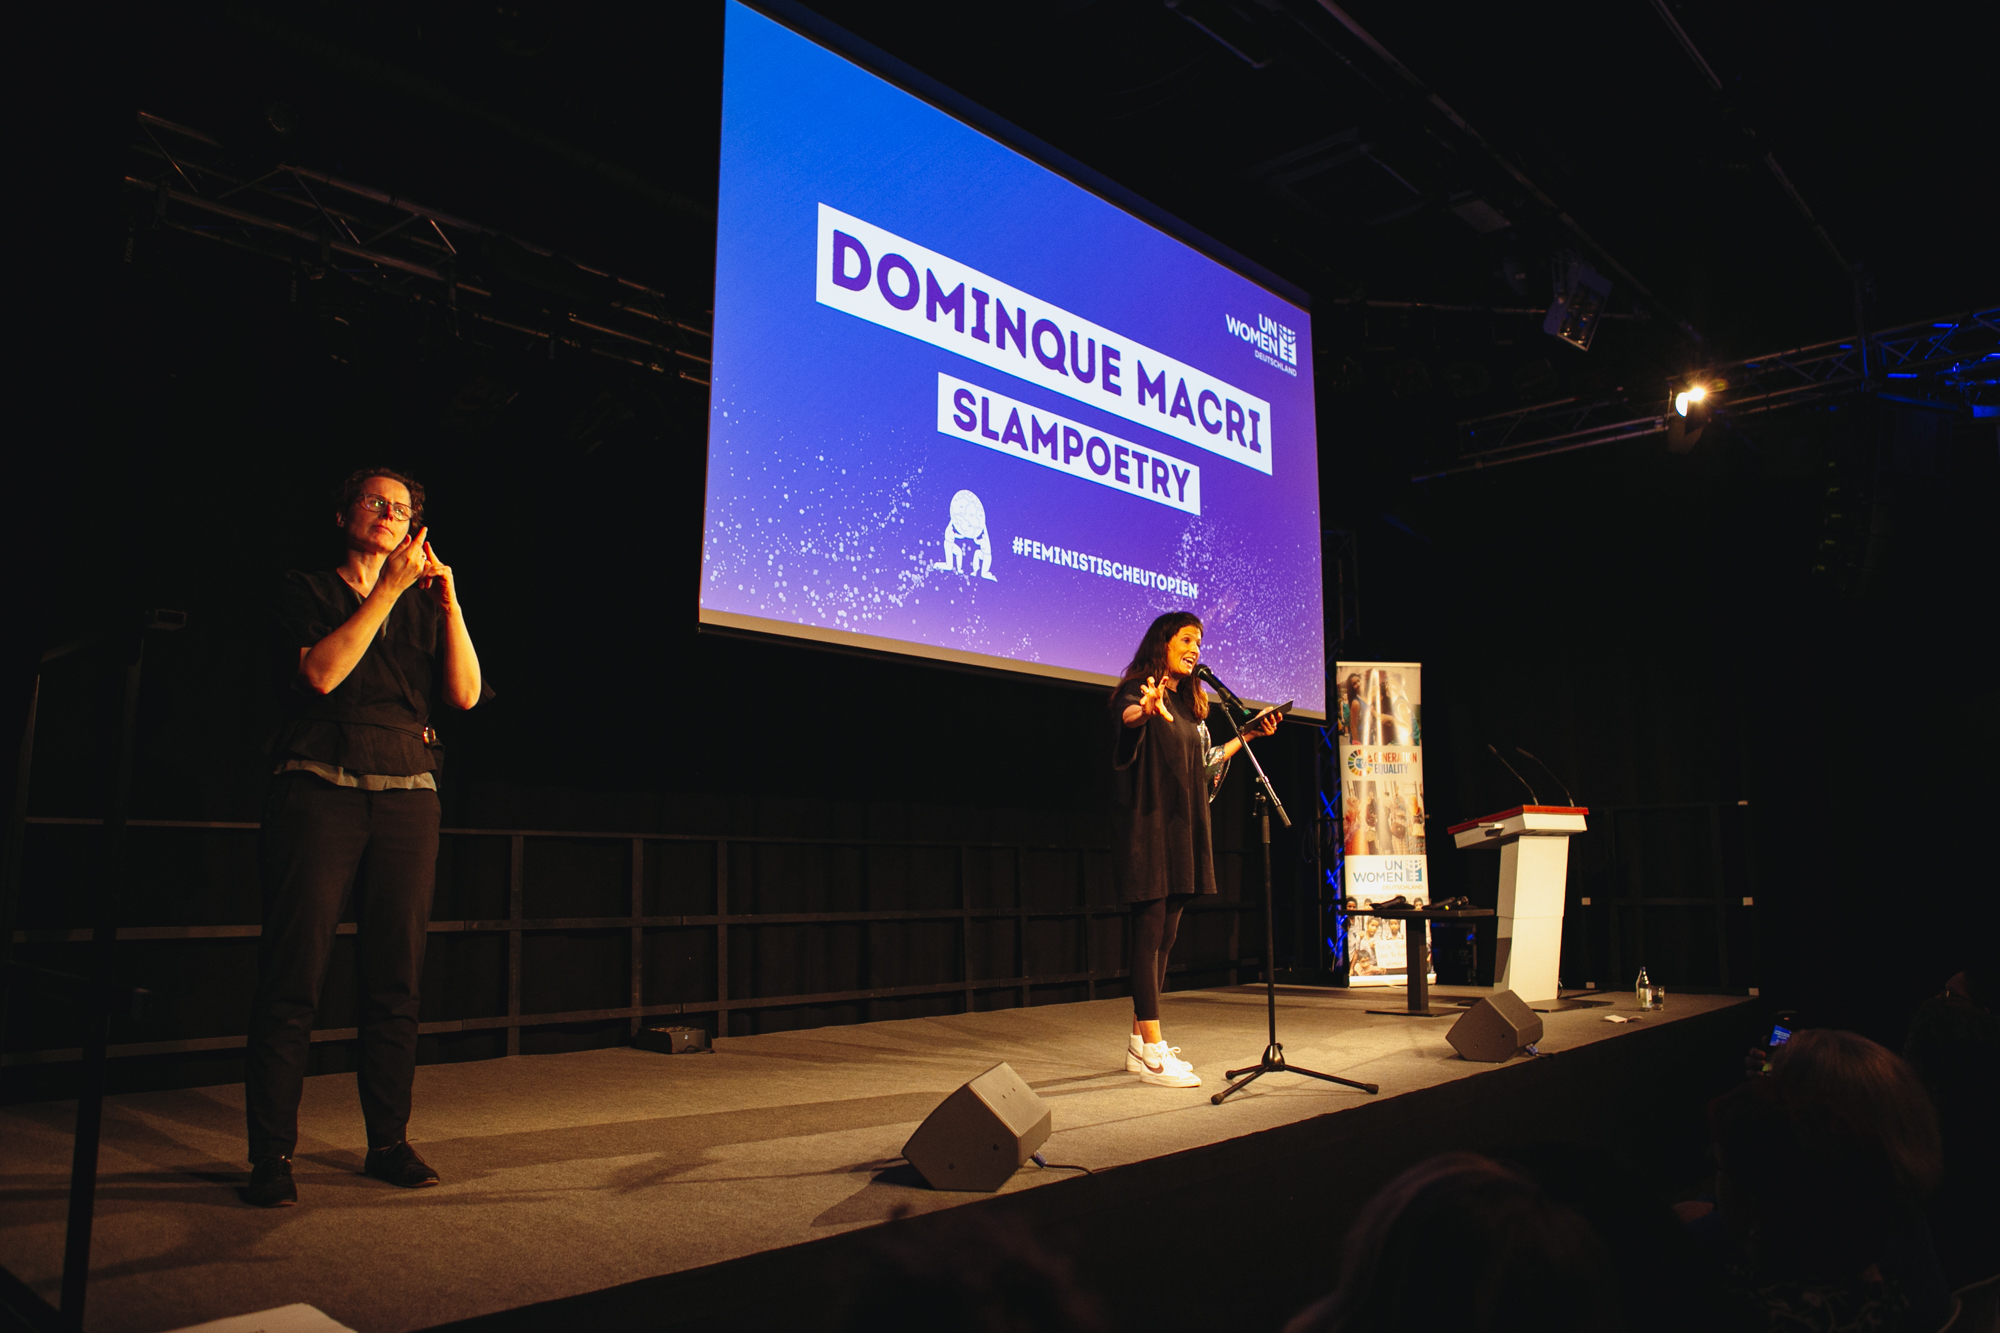 Dominique Macri stellt ihre lyrische Zusammenfassung auf der Bühne vor. Die Gebärdendolmetscherin steht links auf der Bühne und übersetzt die Inhalte von der Slampoetin.